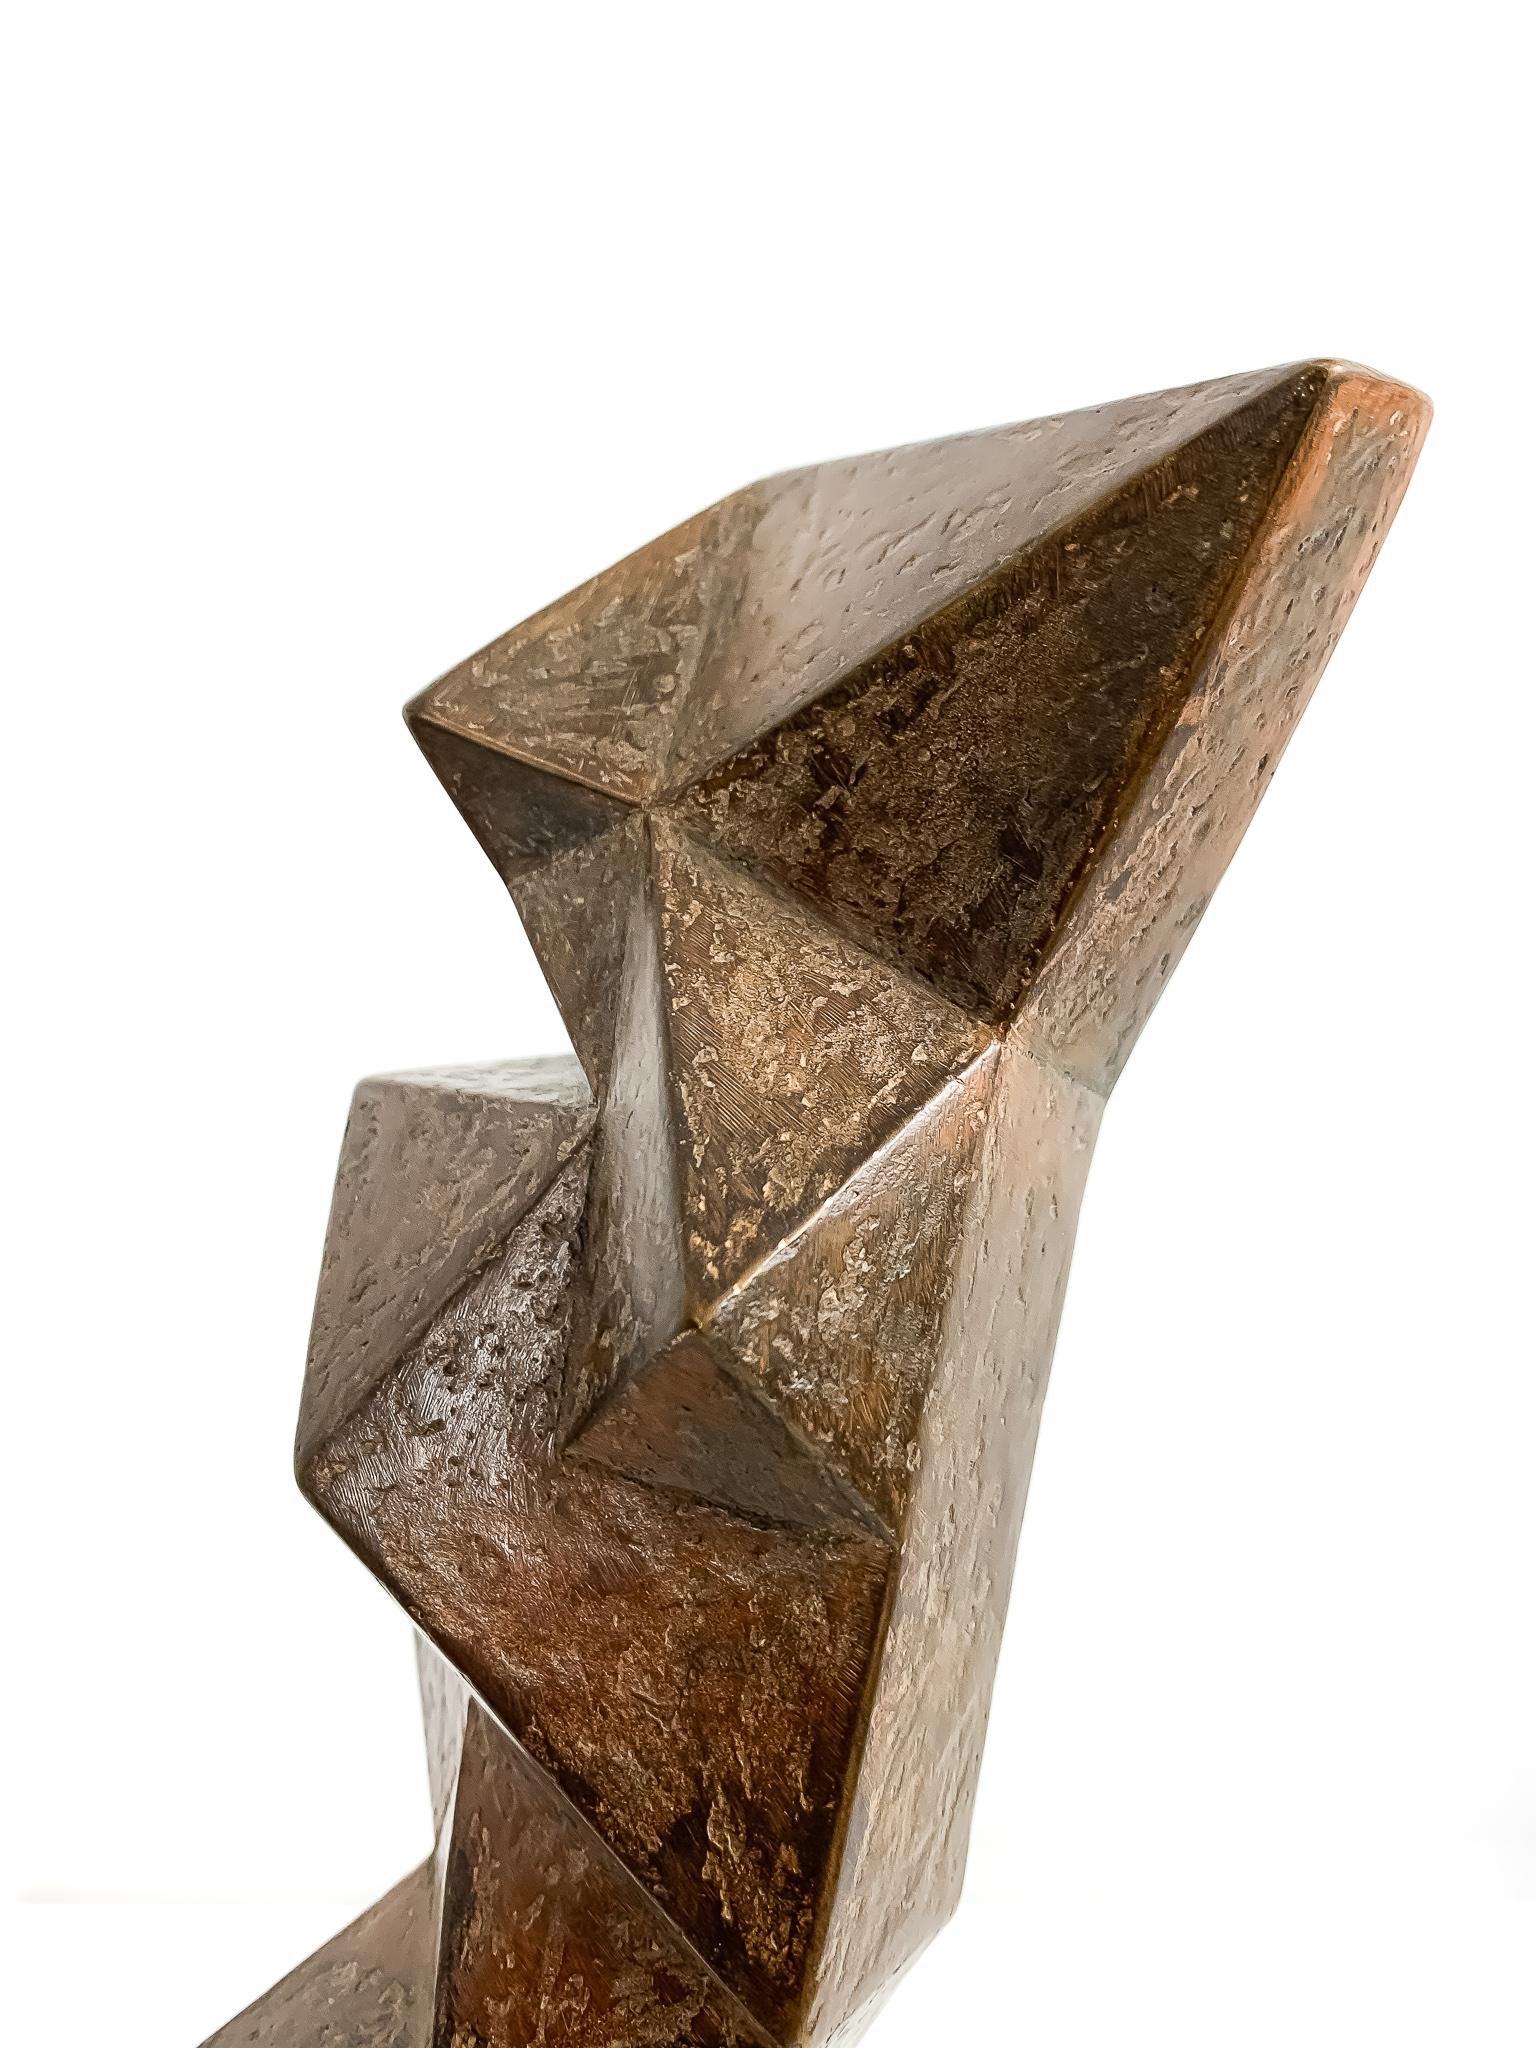 Medium: Patinierte Bronze
Auflage: 1/8

Jim Ritchie (1929-2017), geboren in Montreal, Kanada, ist bekannt für seine Pastellzeichnungen und Bronzeskulpturen. Stilistisch ist er mit dem Kubismus, dem abstrakten figurativen Werk und dem Modernismus